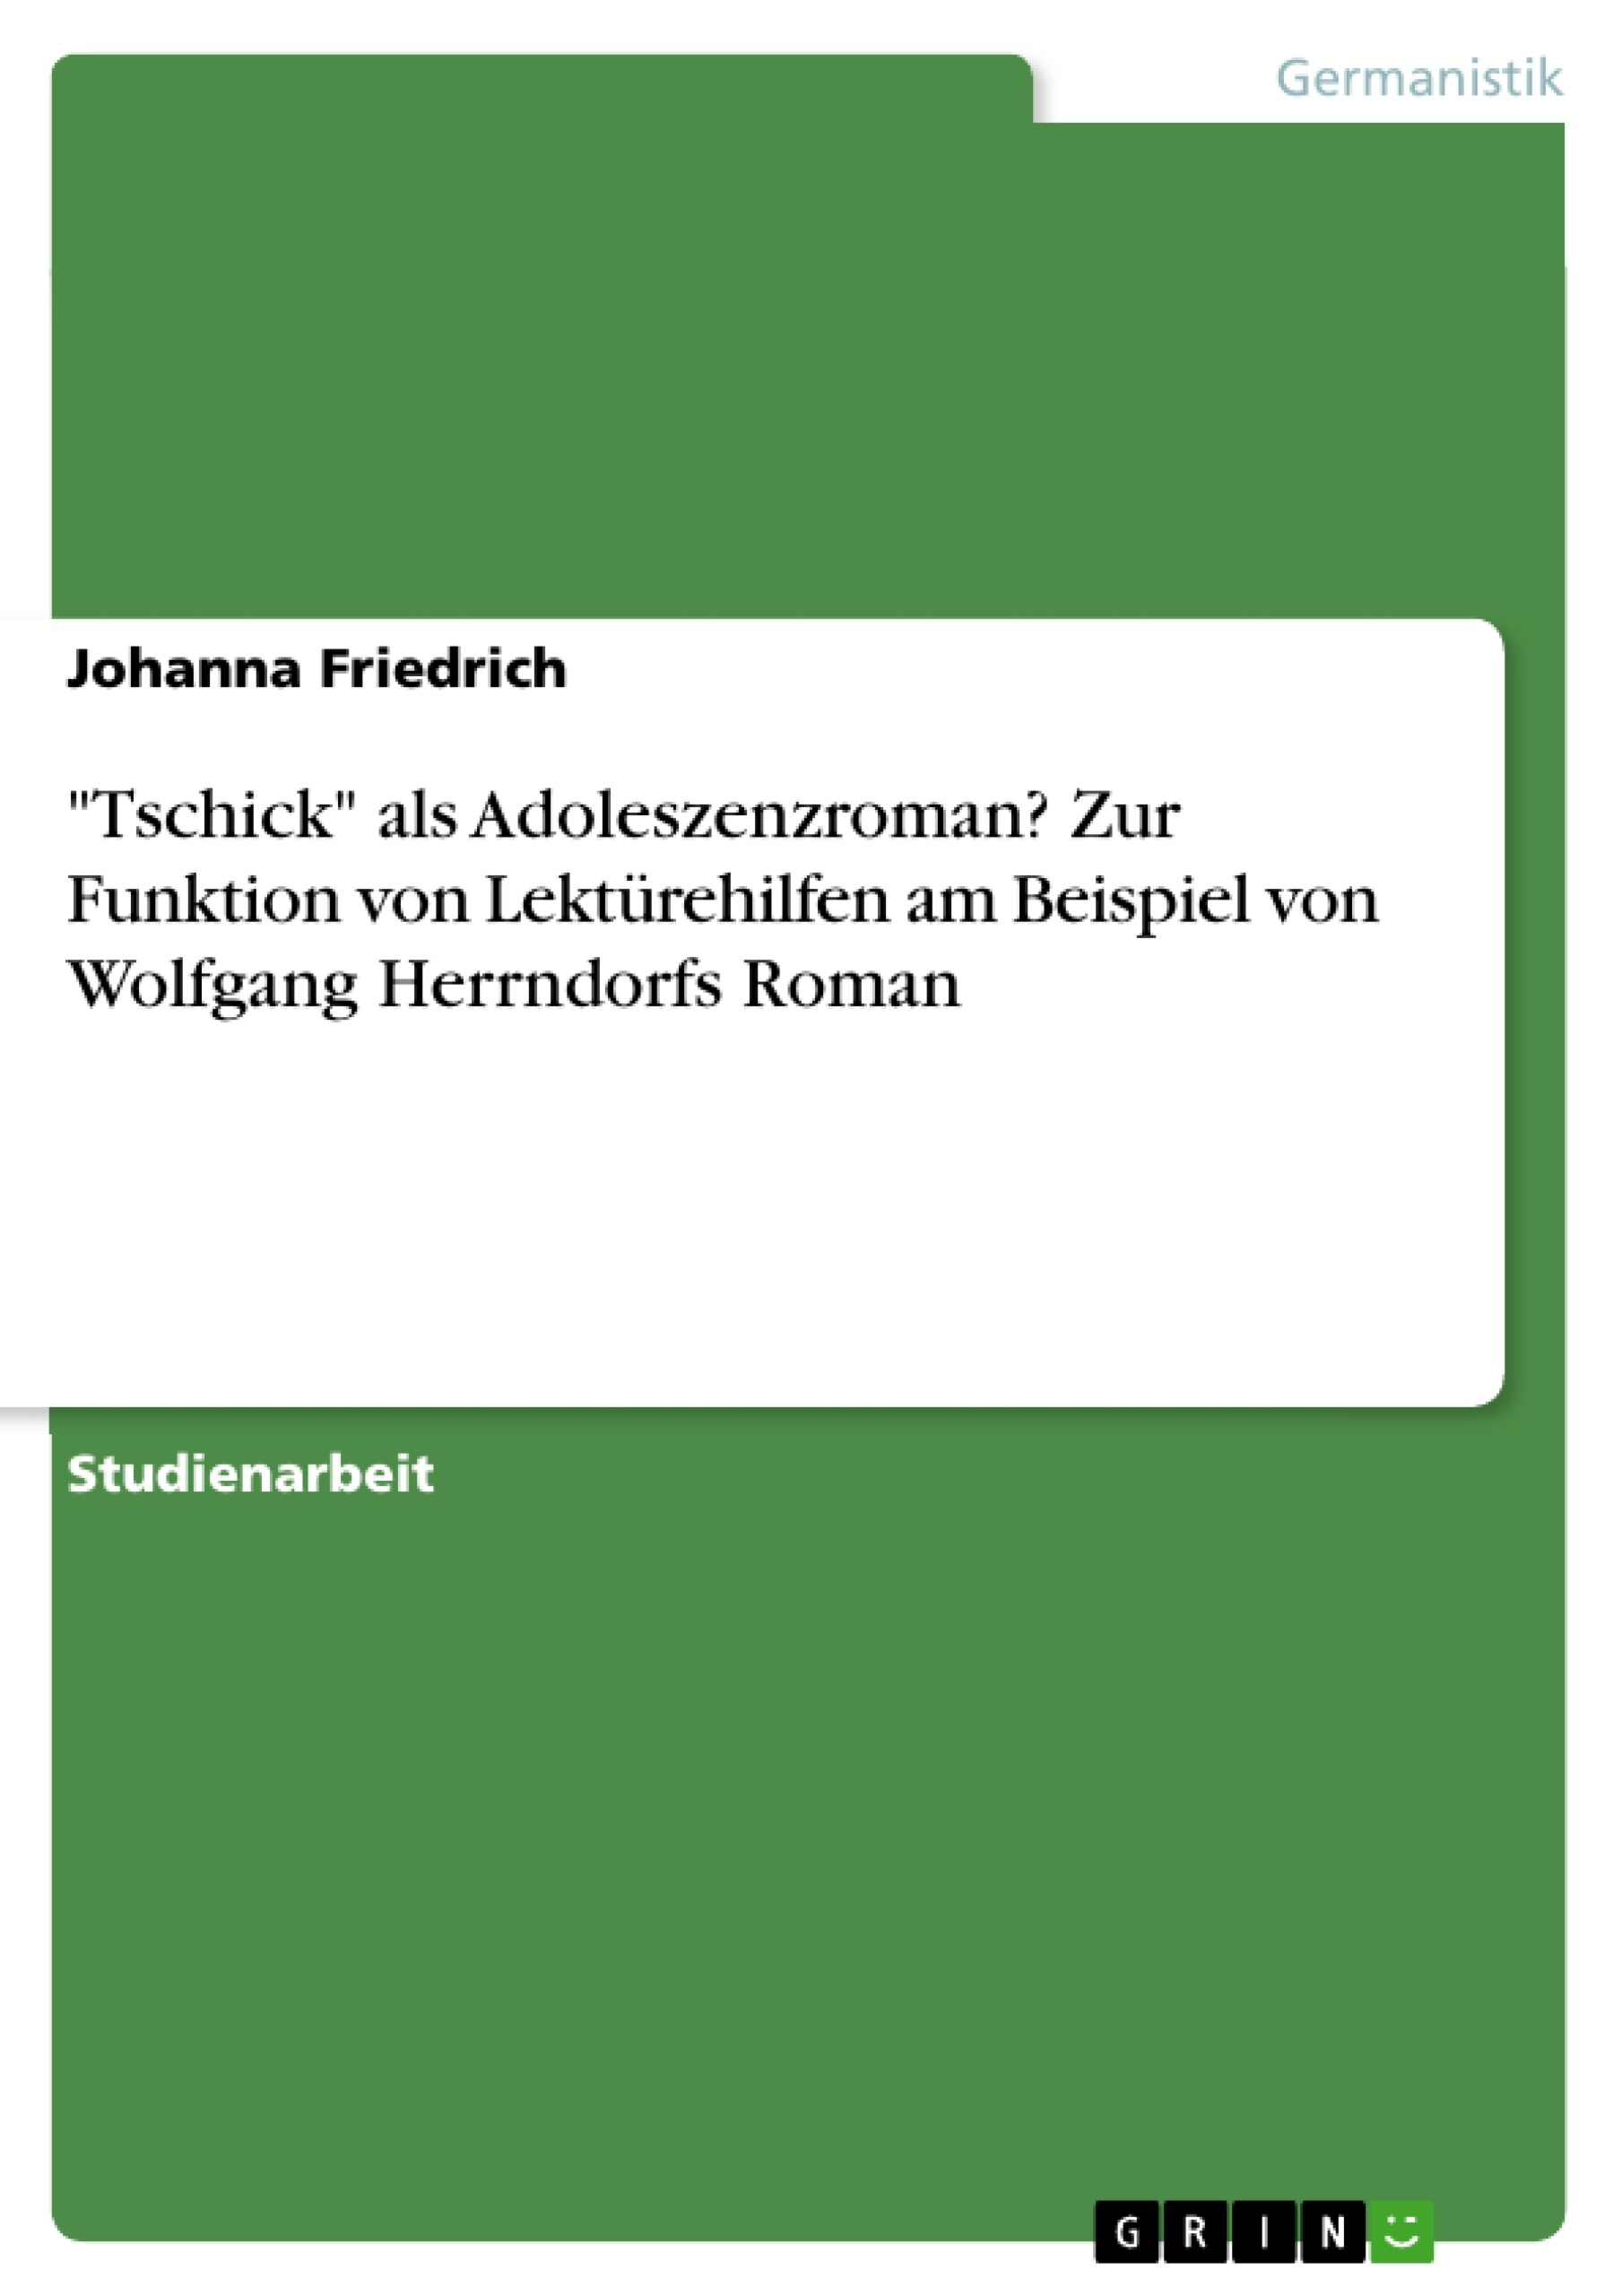 Title: "Tschick" als Adoleszenzroman? Zur Funktion von Lektürehilfen am Beispiel von Wolfgang Herrndorfs Roman